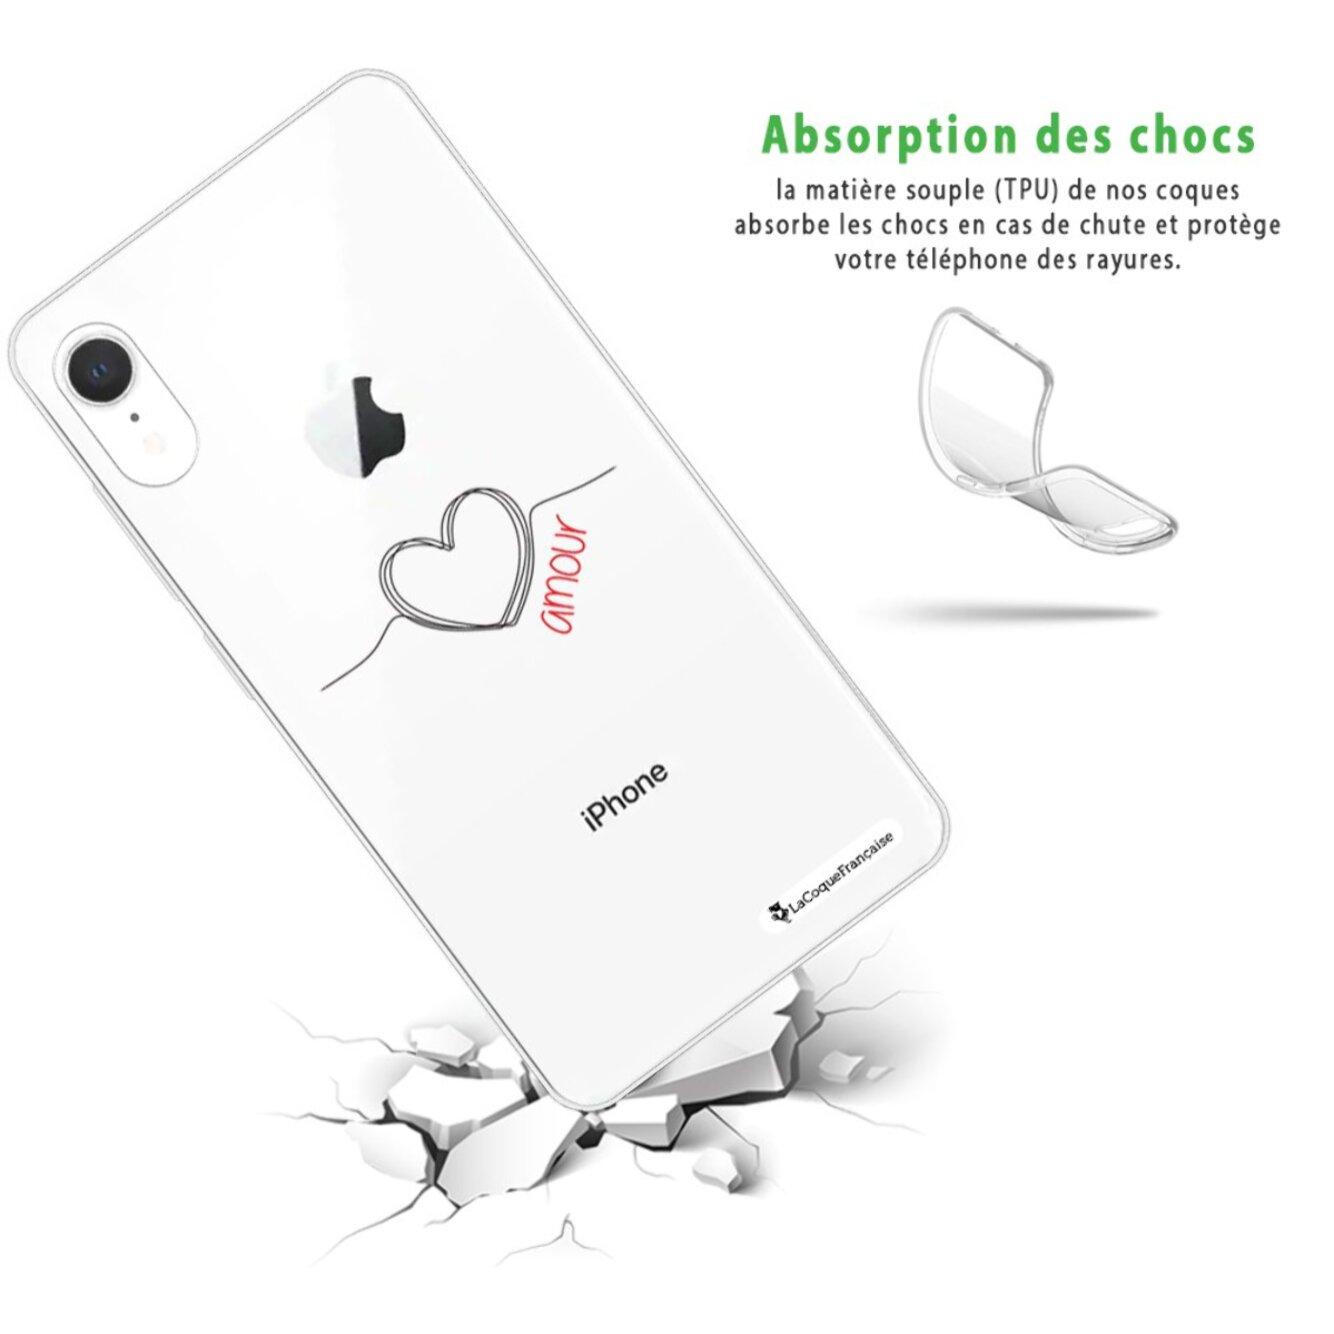 Coque iPhone Xr silicone transparente Coeur Noir Amour ultra resistant Protection housse Motif Ecriture Tendance La Coque Francaise